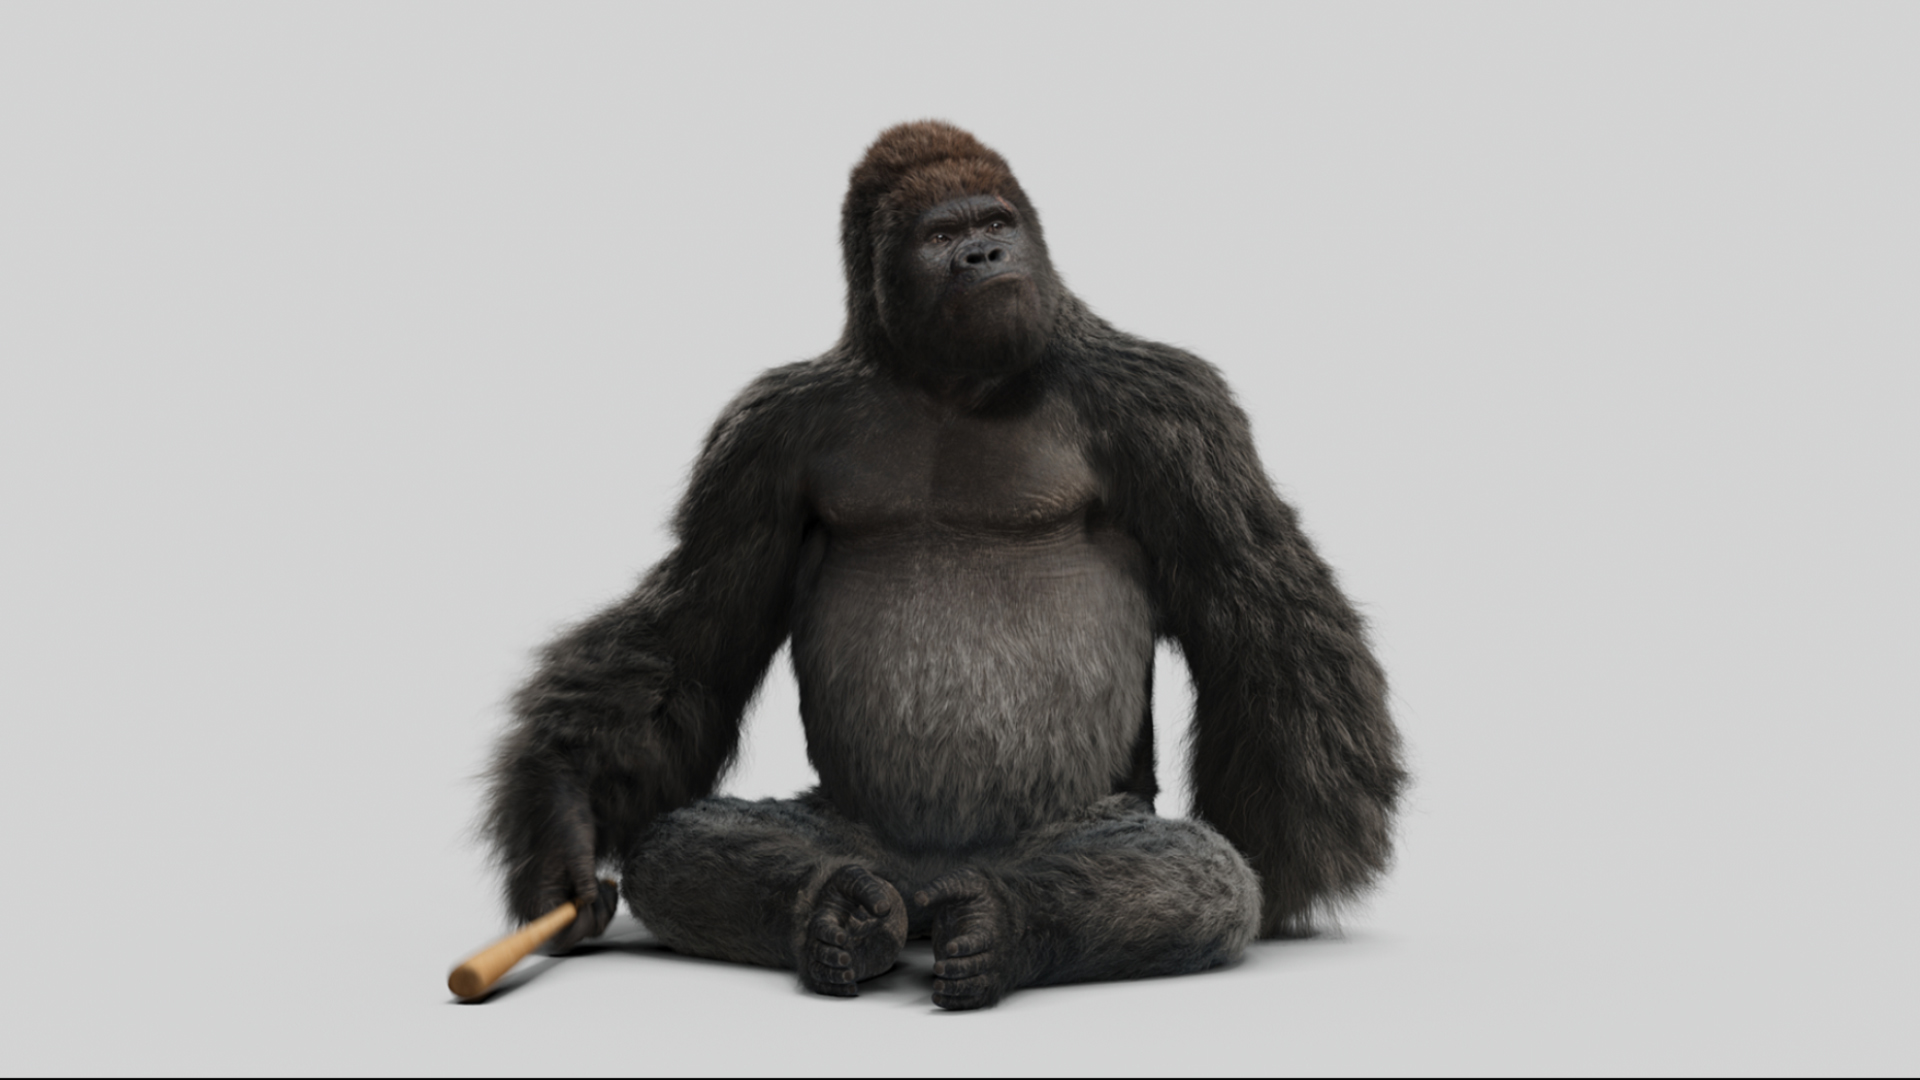 Download mobile wallpaper Gorilla, Movie, Mr Go for free.